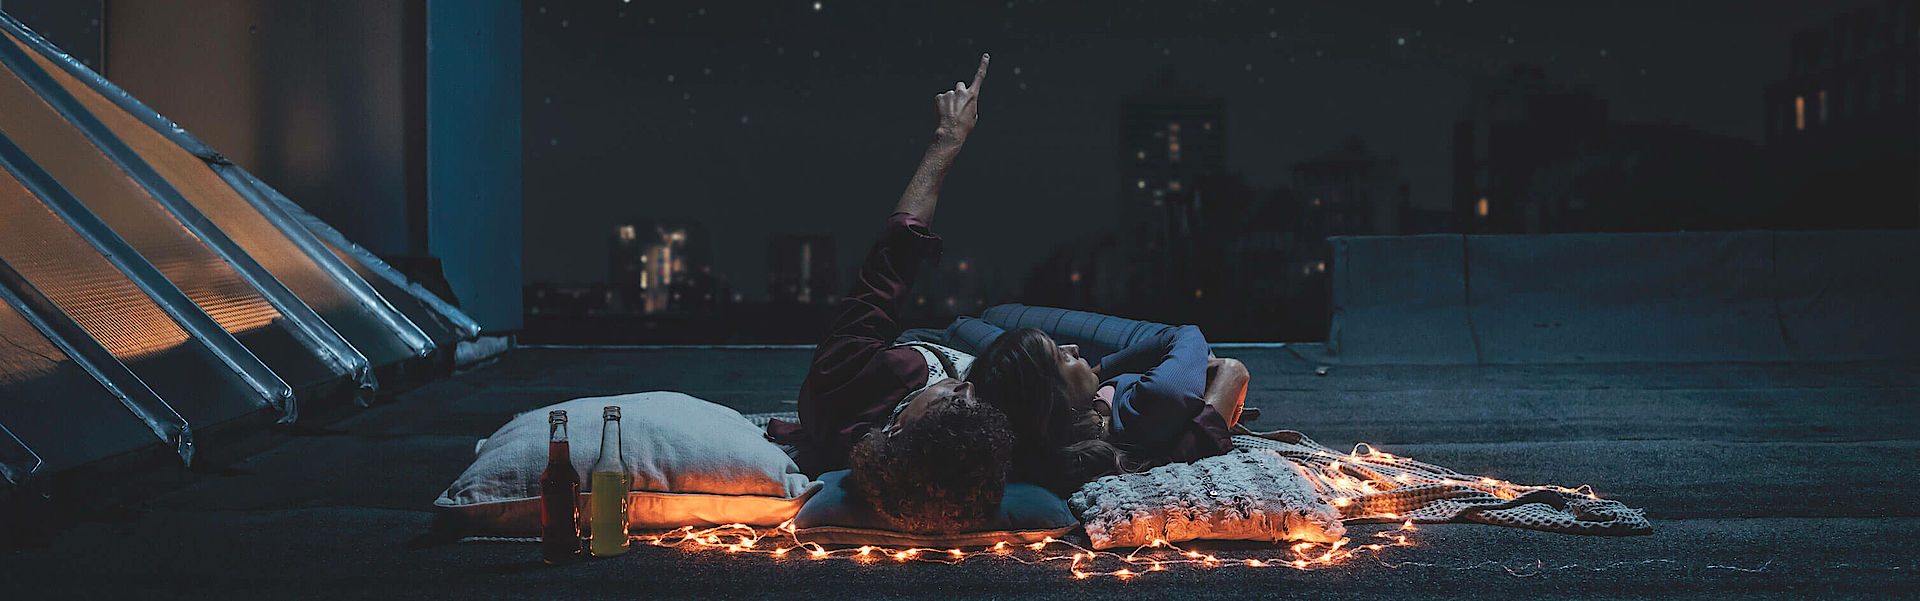 Ein Paar liegt auf der Dachterrasse und betrachtet den Sternenhimmel. Der Mann zeigt mit dem Arm in den Himmel.